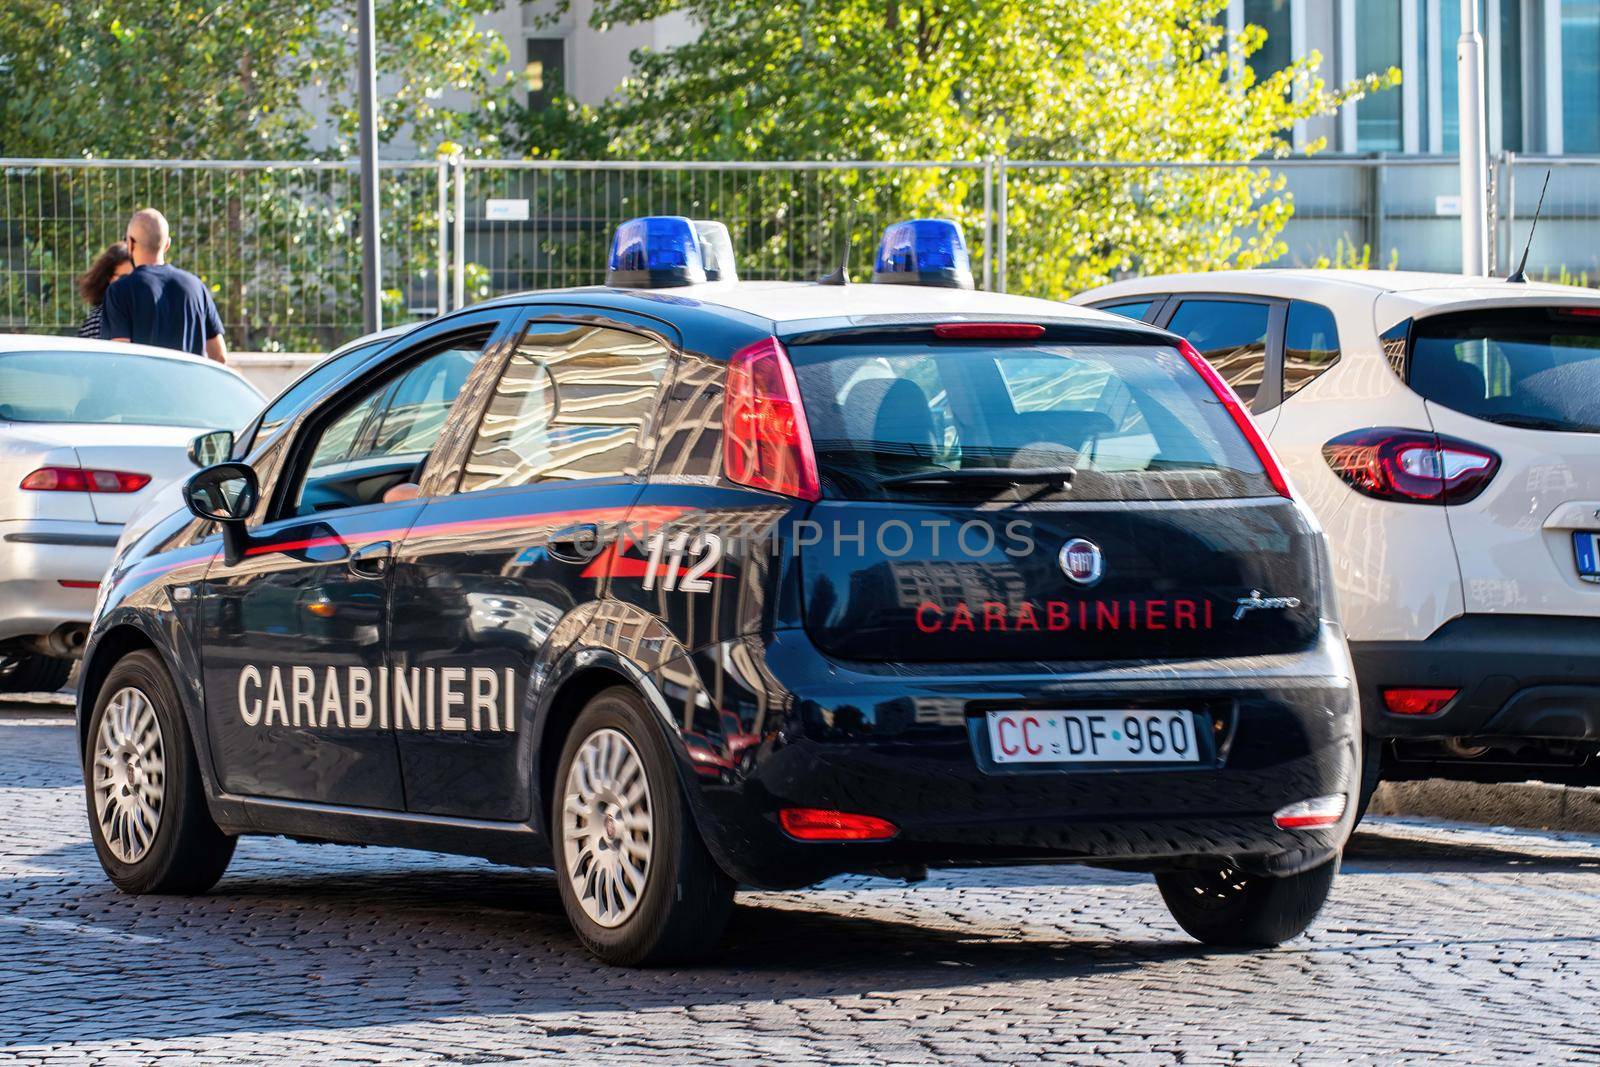 terni,italy september 06 2021:carabinieri car that runs along a street in the city center